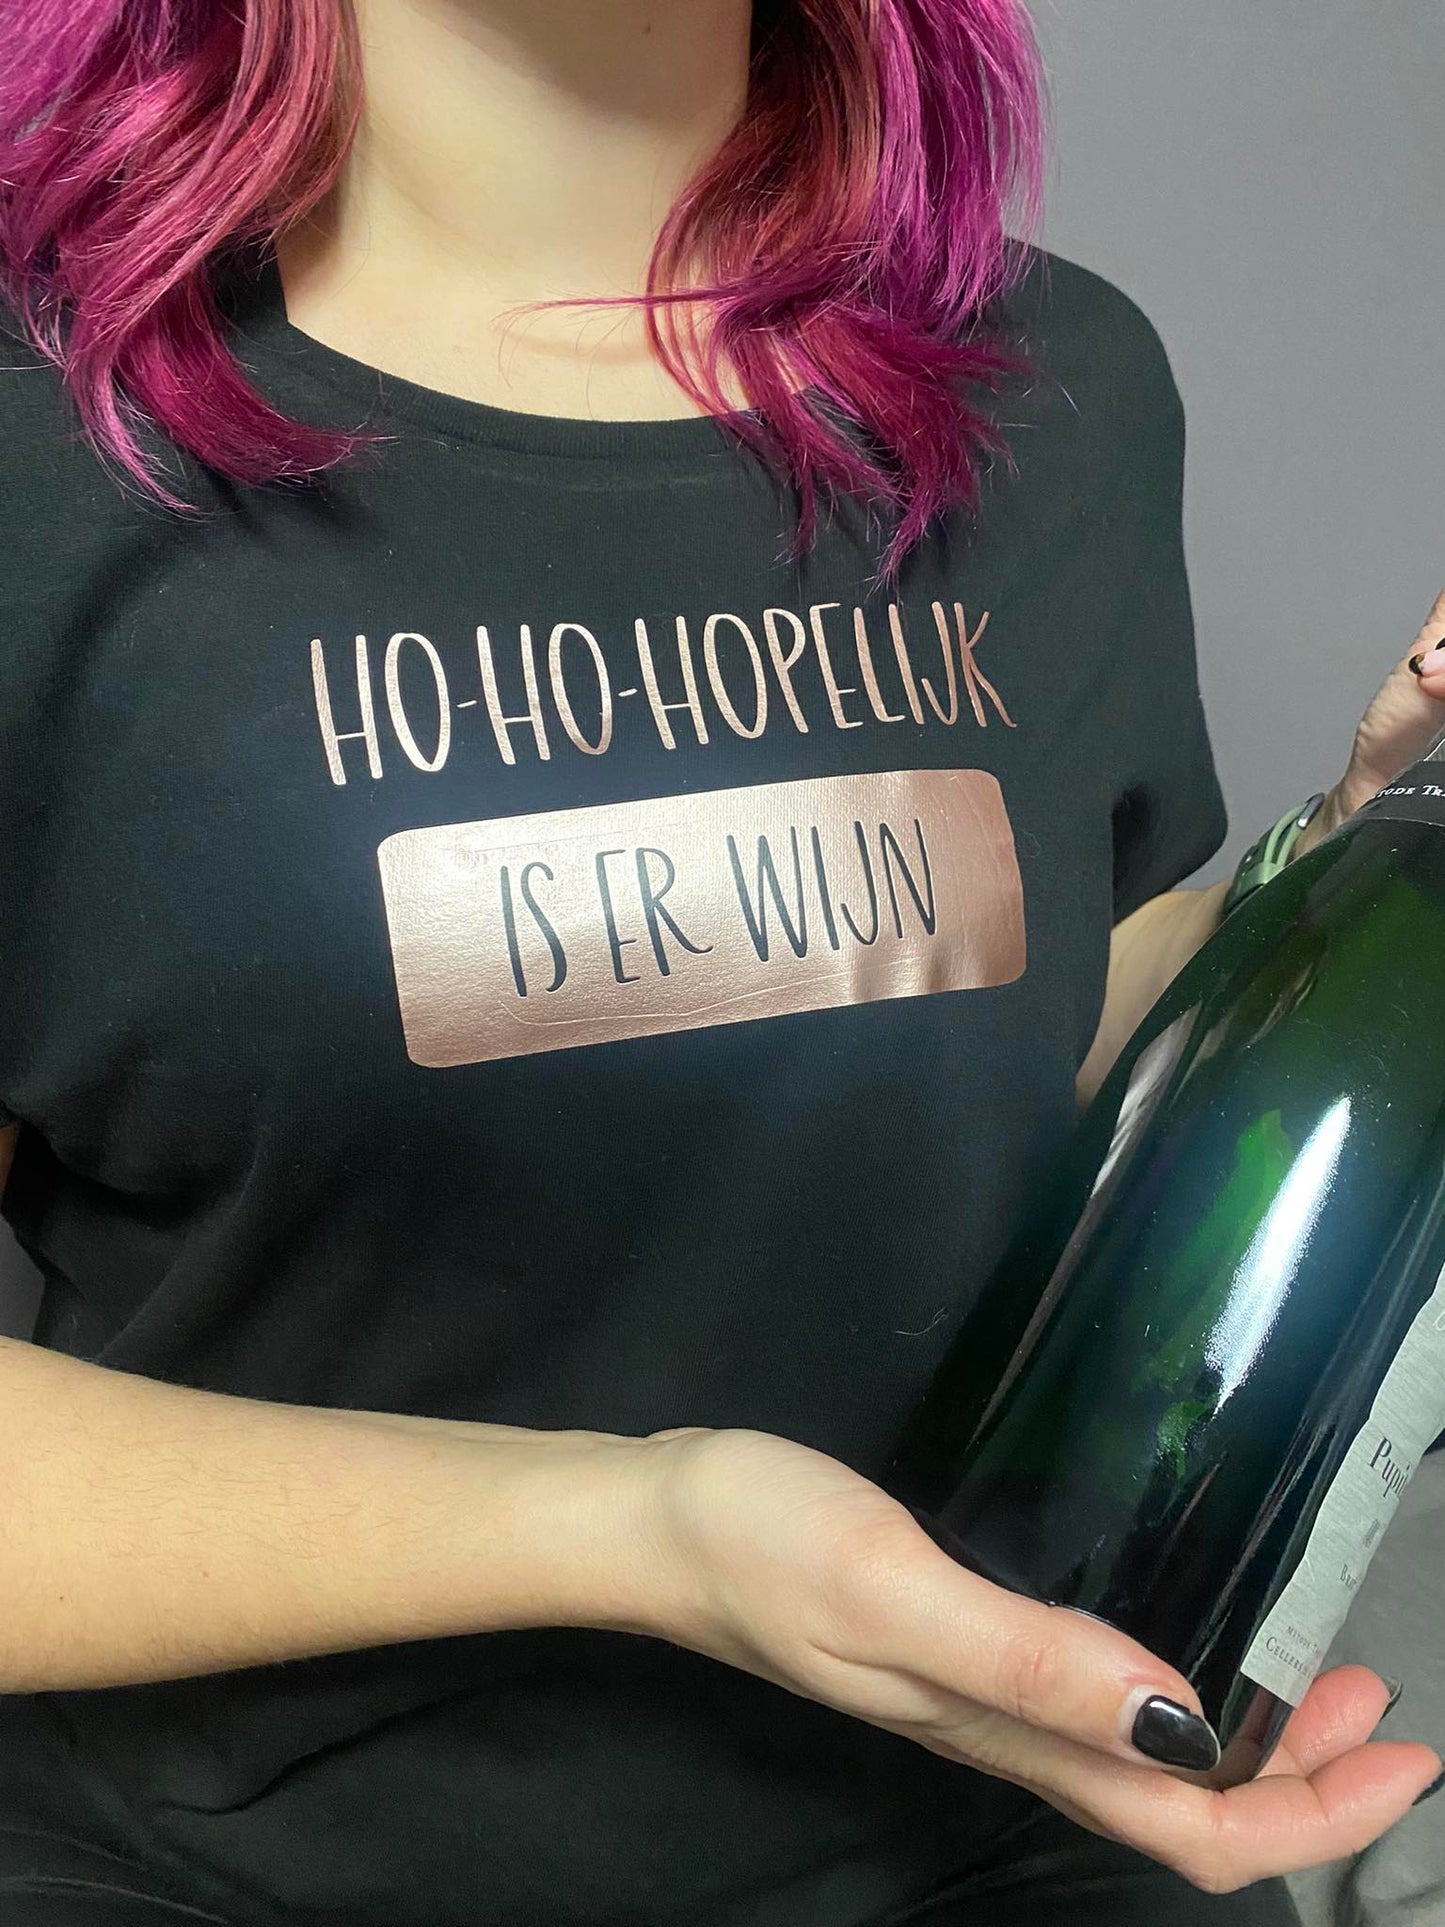 Ho-ho-hopelijk is er wijn - Tshirt